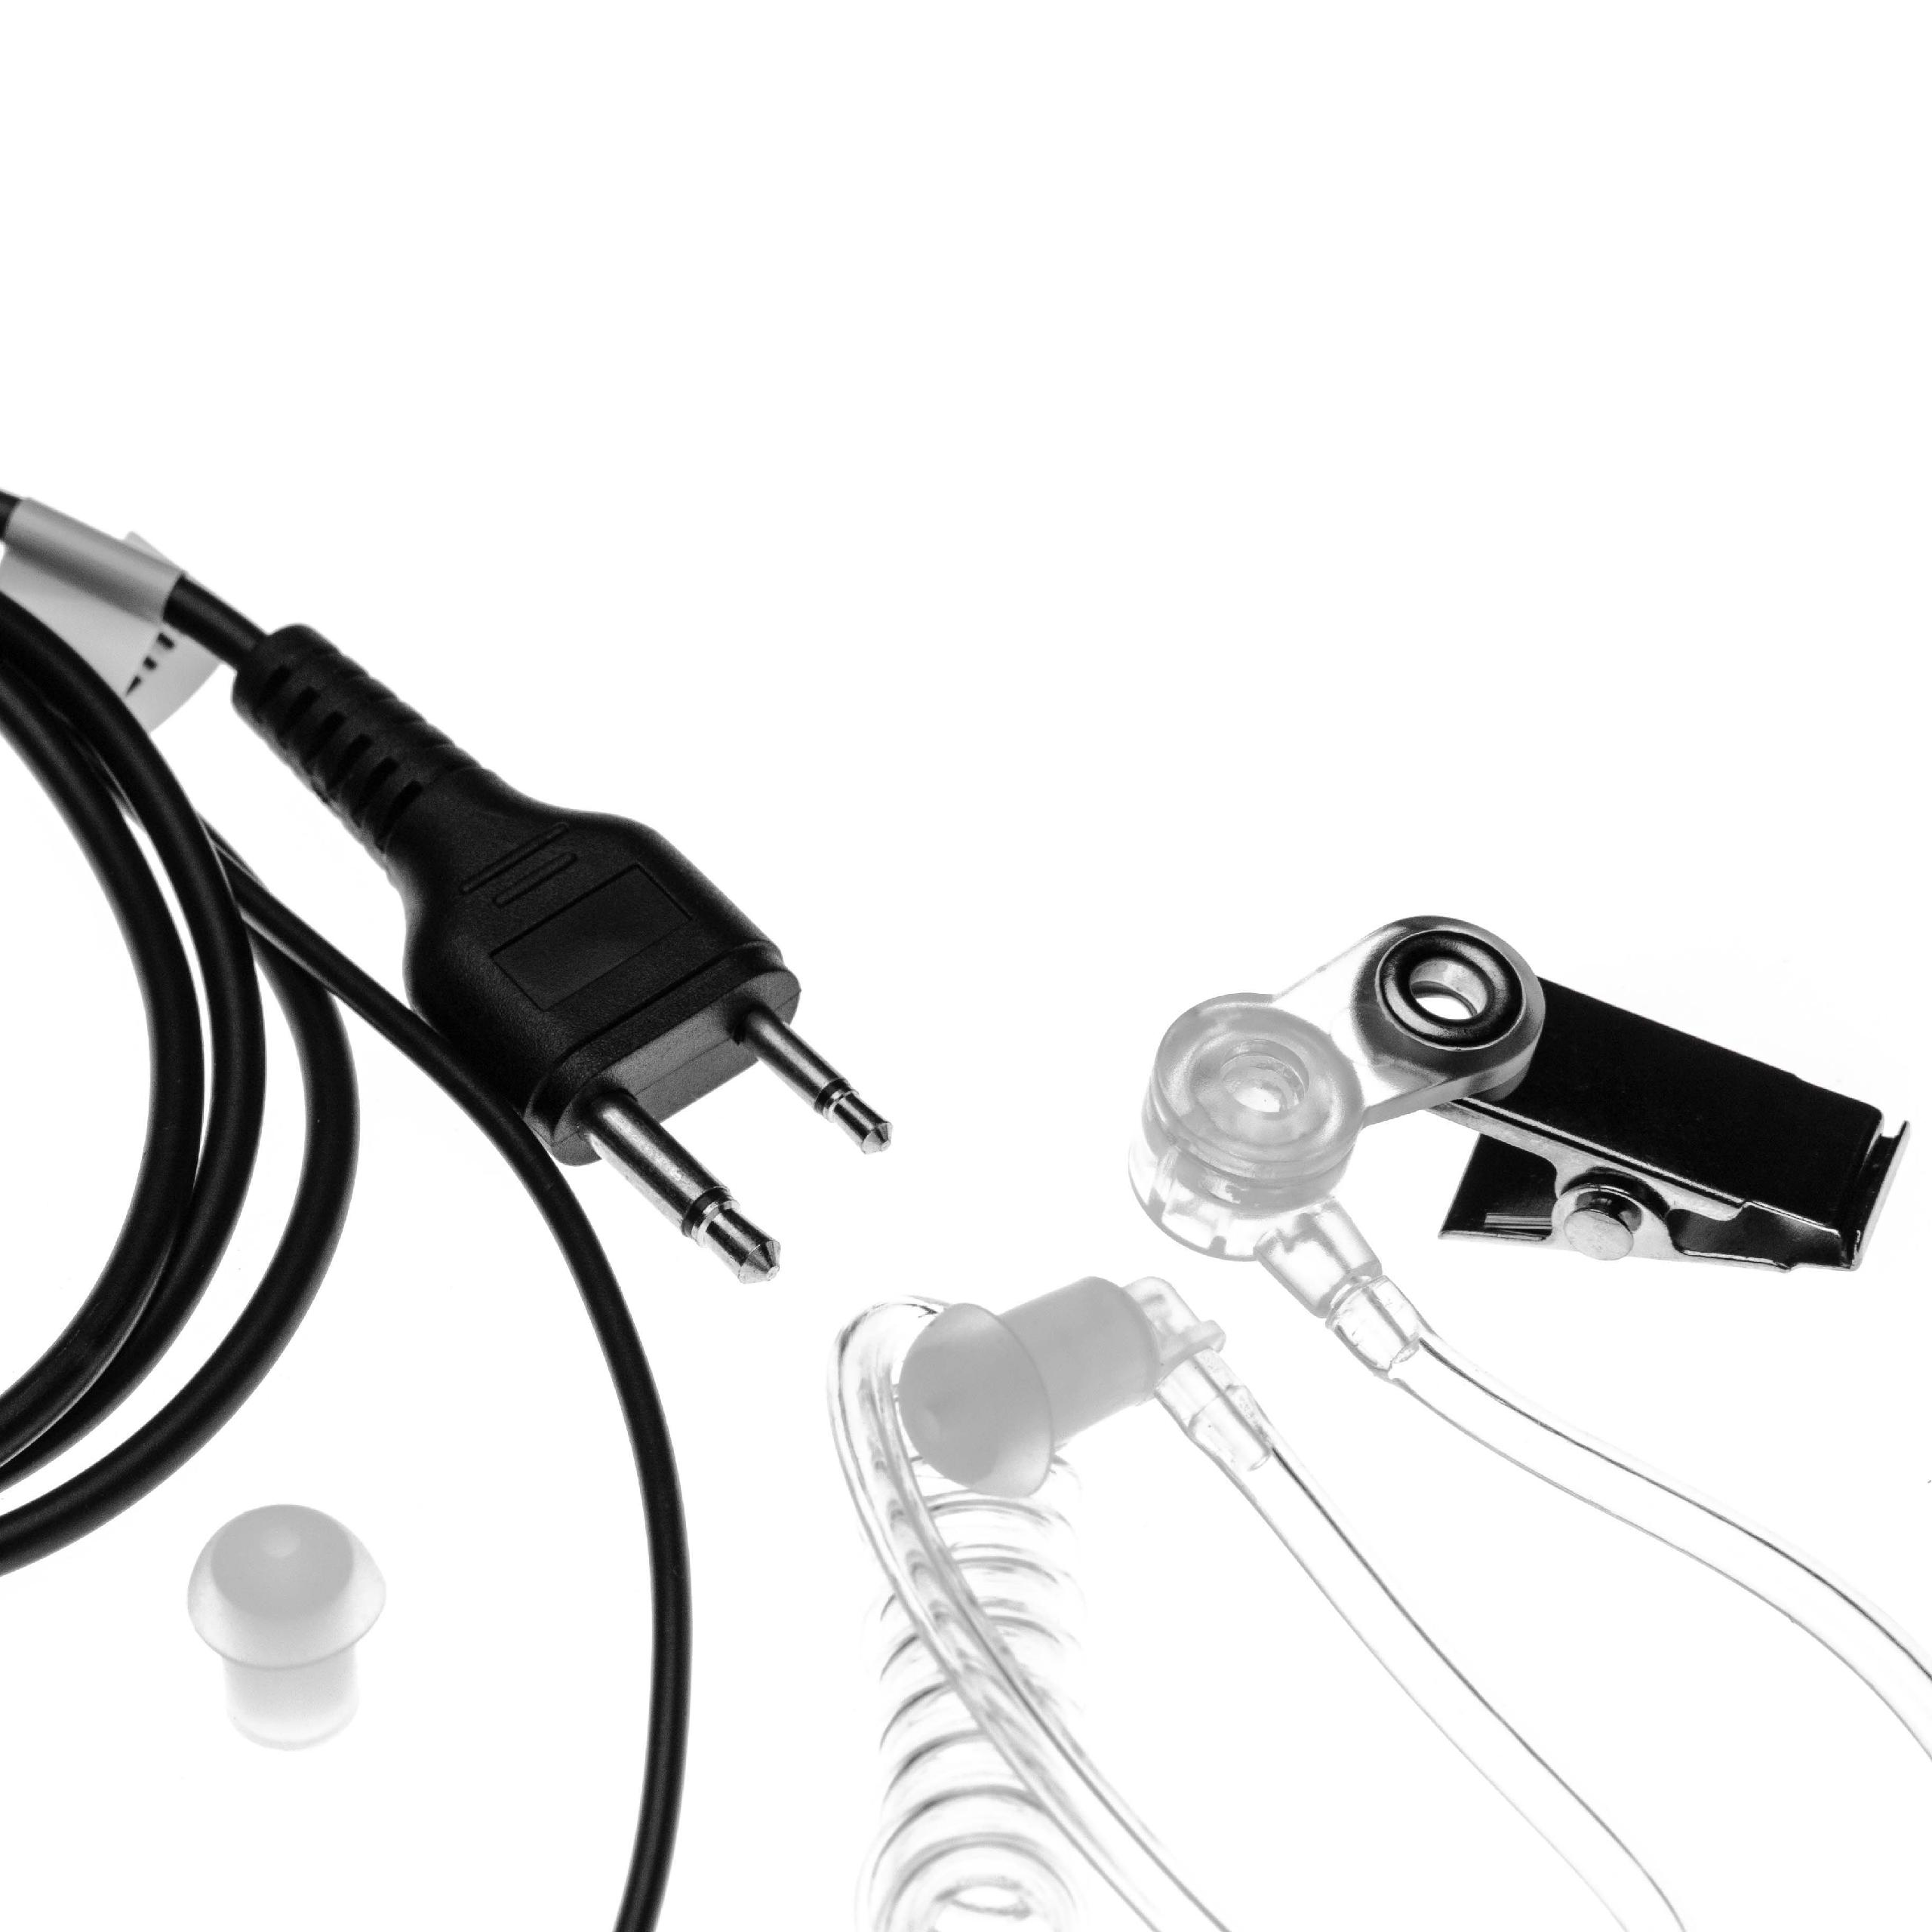 VHBW kompatibel mit Icom IC-A3, IC-A22E, / IC-E90, IC-A3E, schwarz IC-A21, IC-A4, IC-A22, Headset On-ear IC-A4E, transparent IC-E91, IC-F10